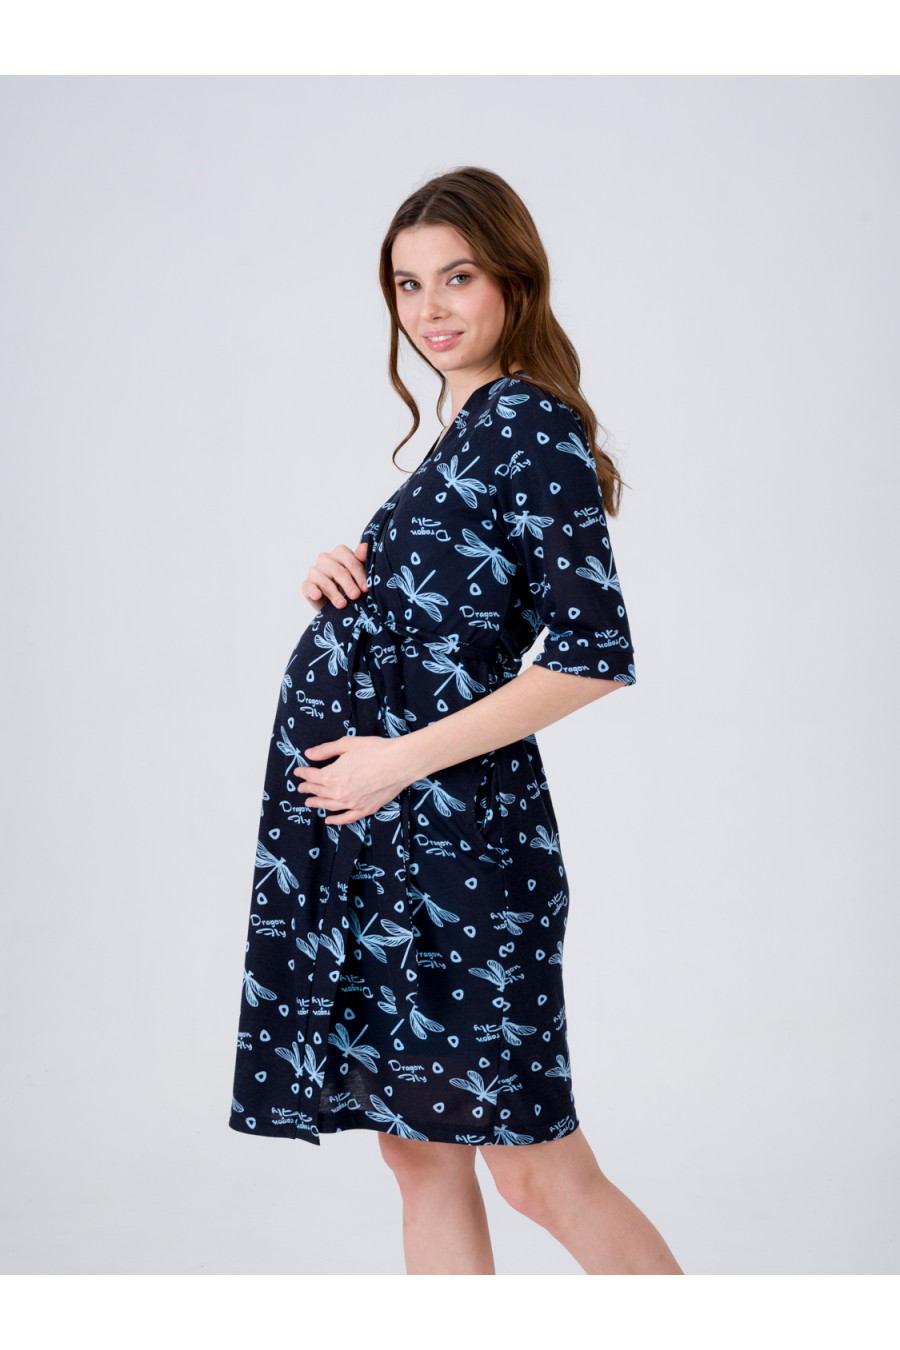 Комплект для беременных и кормящих  8.153 голубой, стрекозы